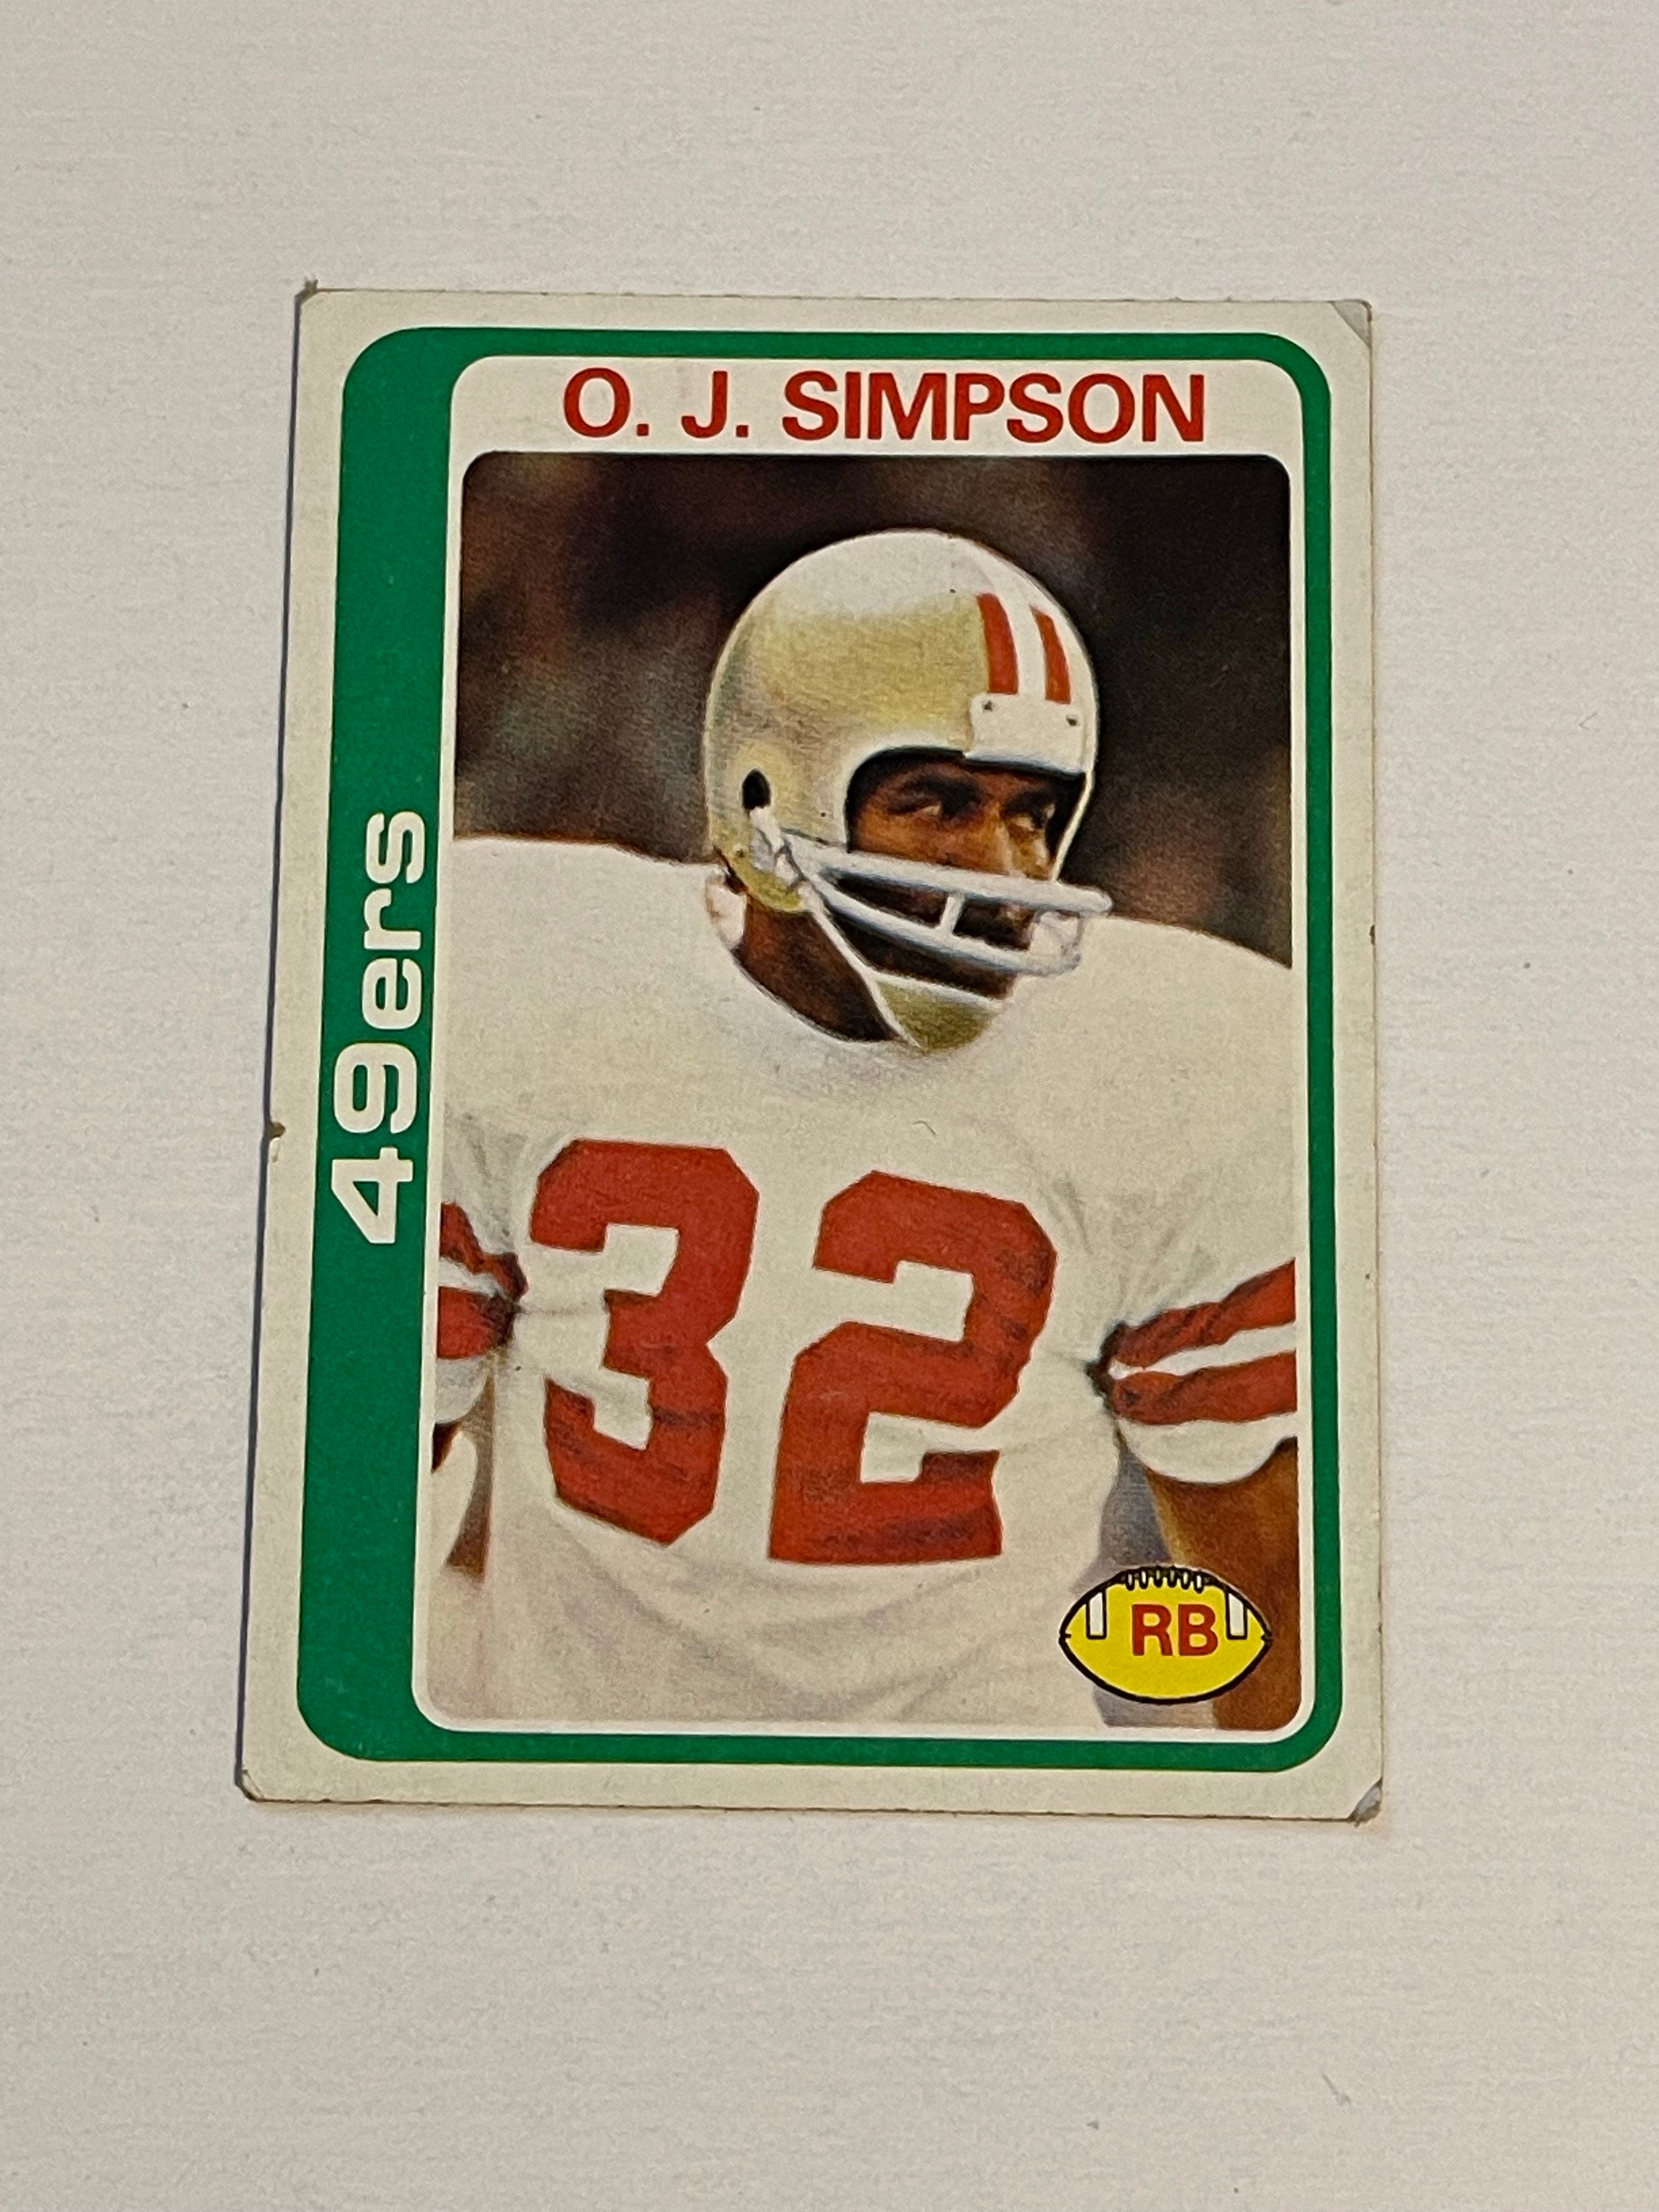 OJ Simpson vintage football card 1977